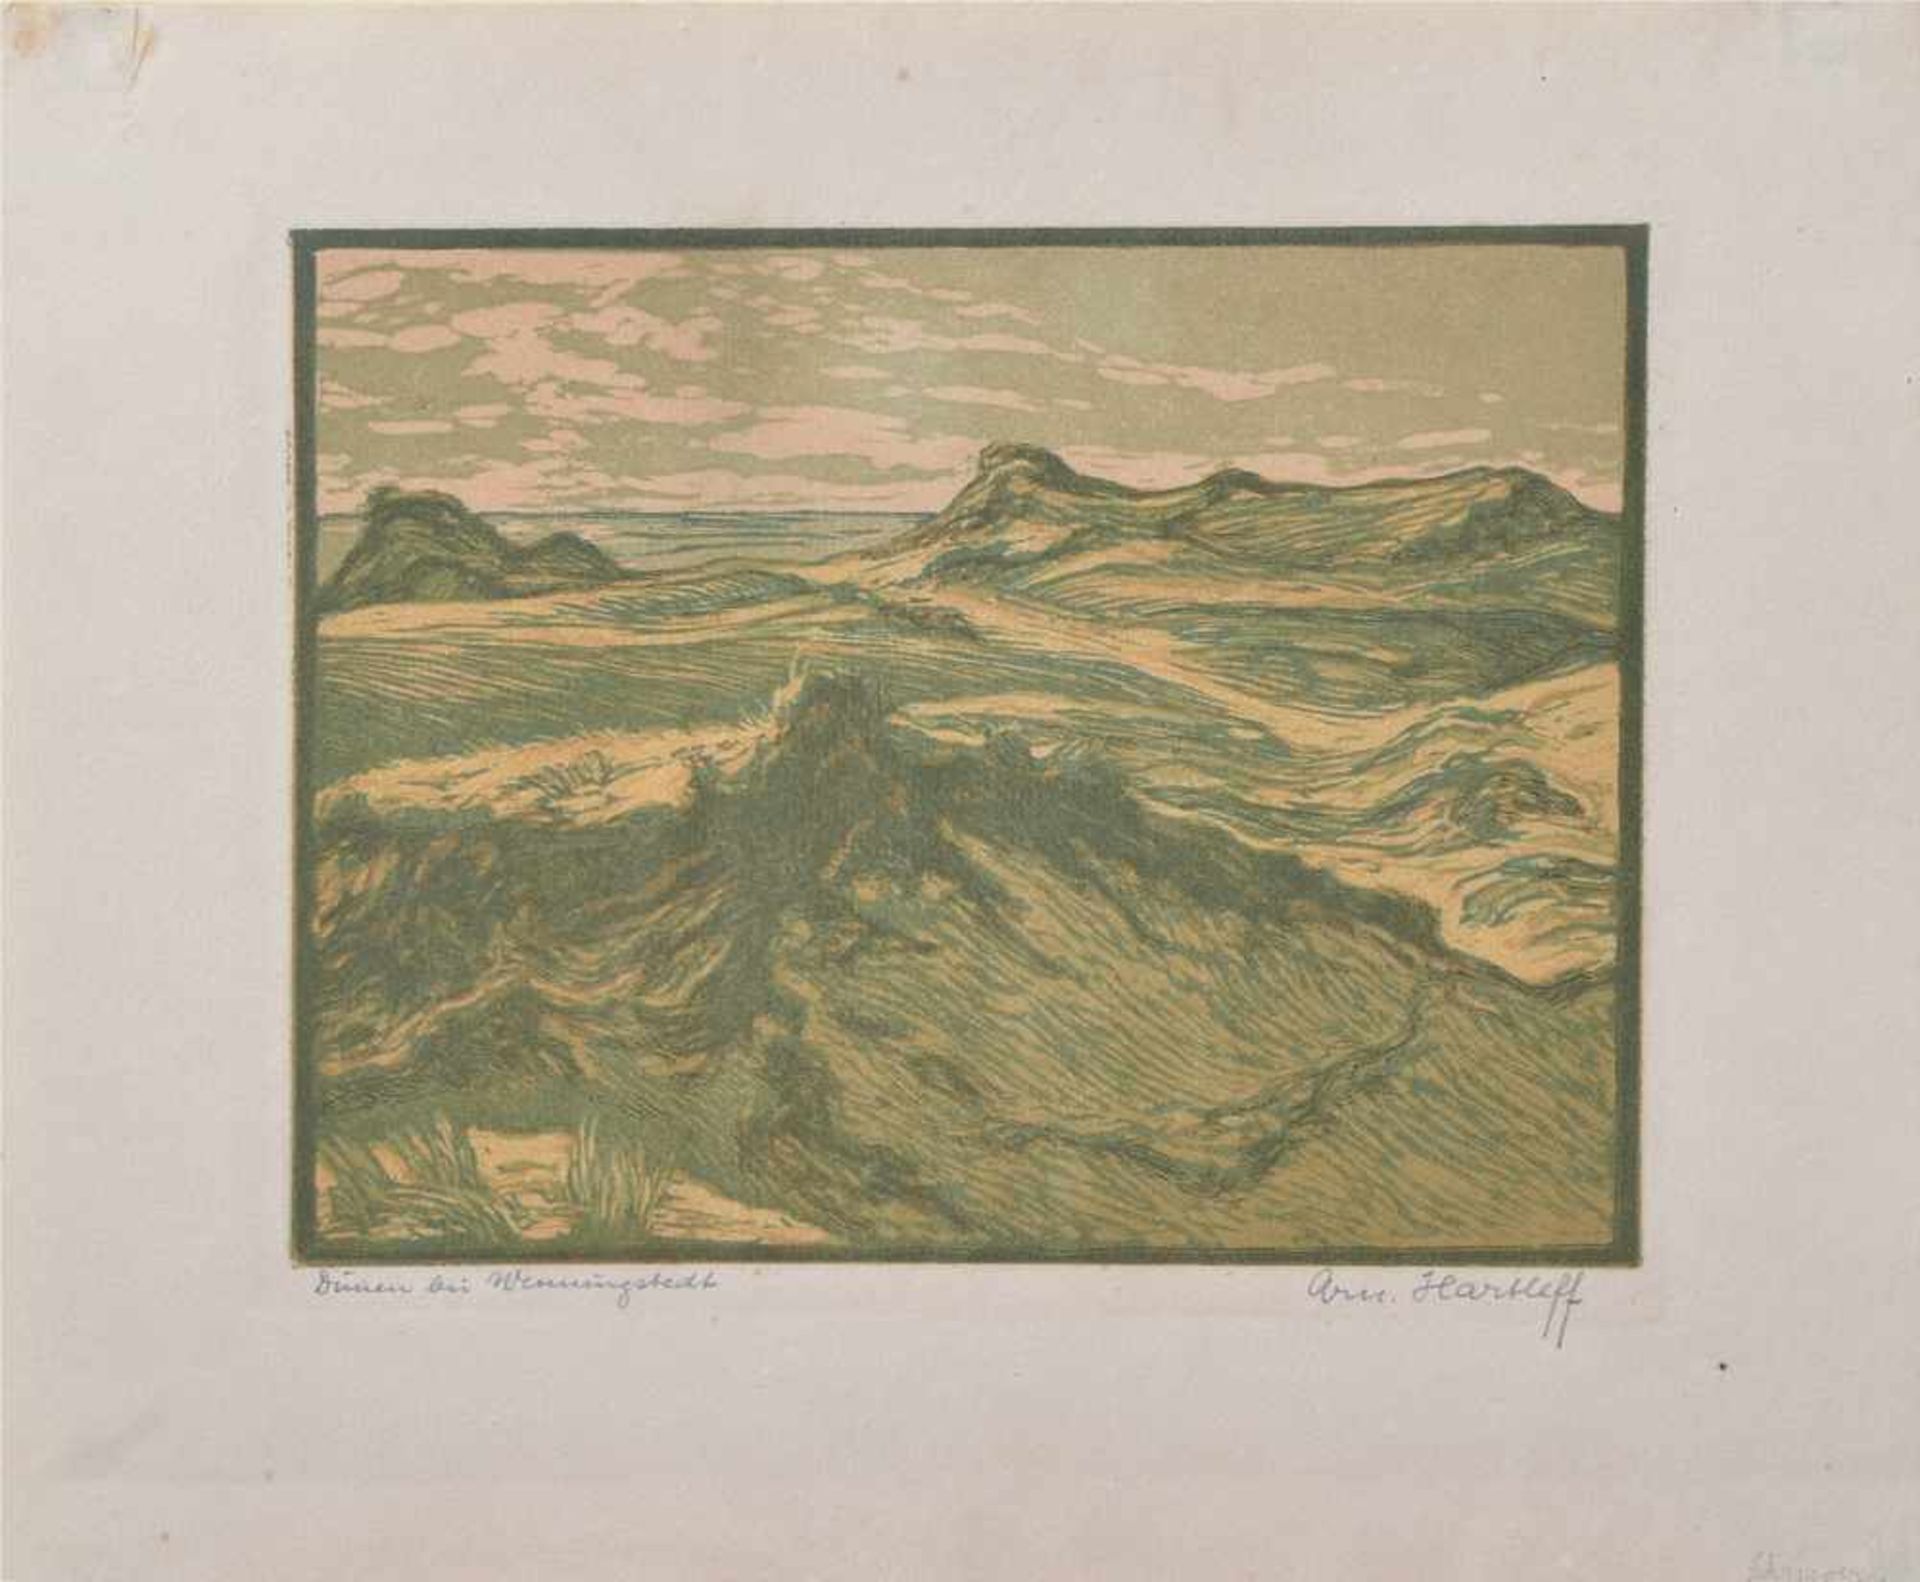 5 Diverse Graphiken: Israels, Jozef (1824-1911) "Kinder an der Düne", Radierung, 10x15cm, Harleff, - Image 5 of 6